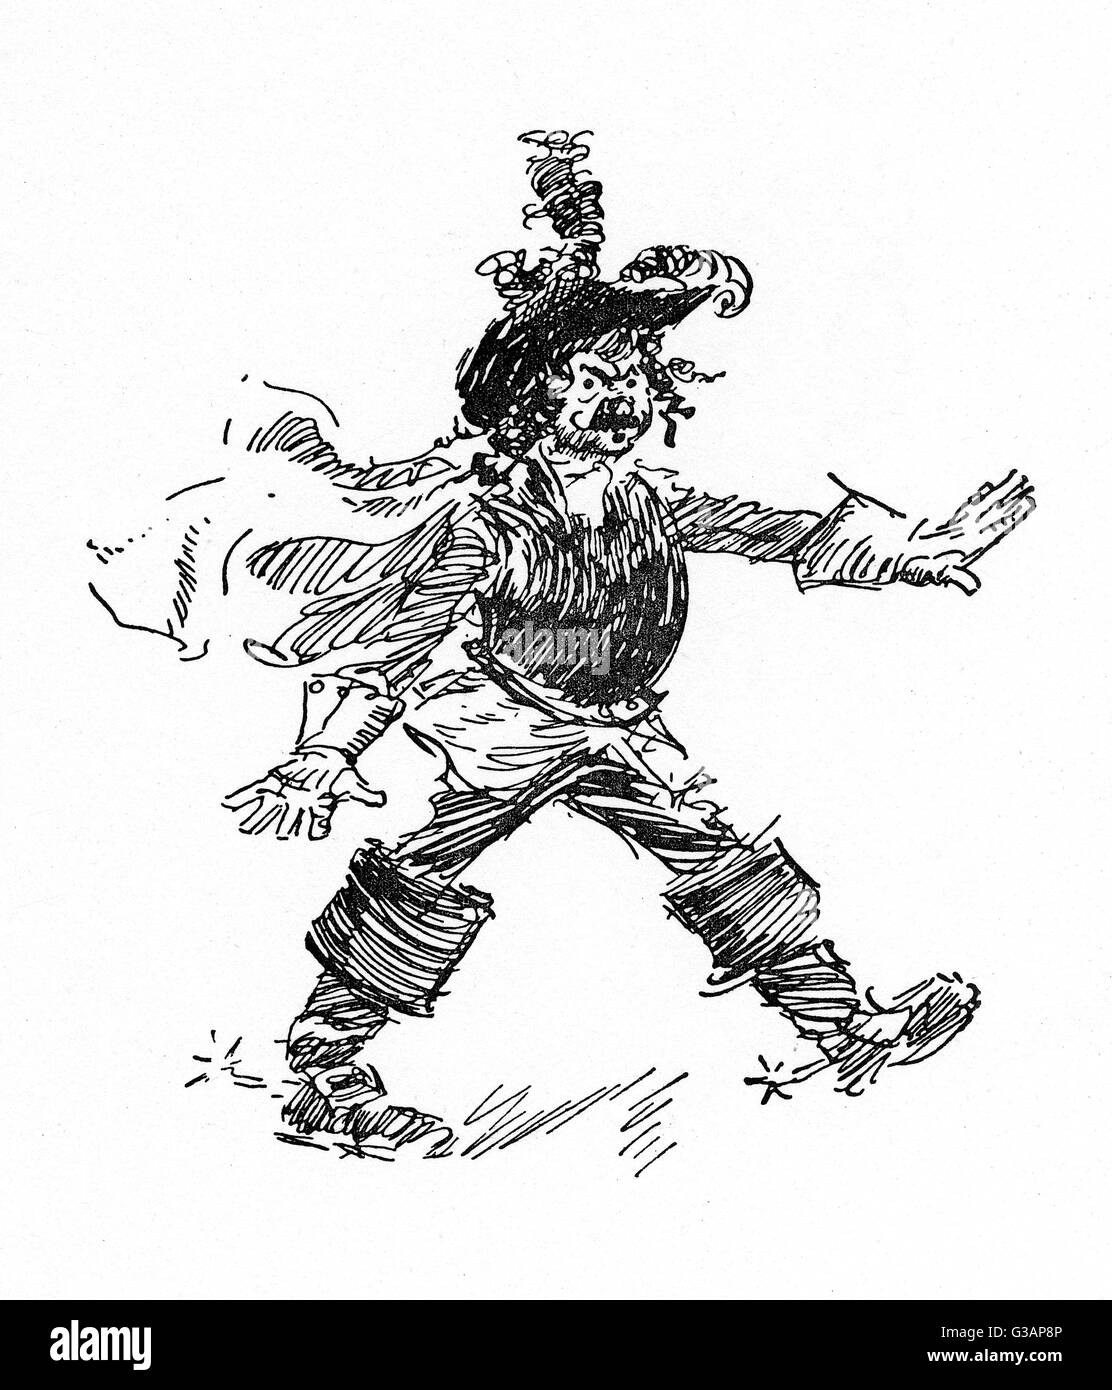 Späten viktorianischen Schauspieler im Cavalier Kostüm von einem Federhut und Cavalier Stiefeln mit Sporen.     Datum: ca. 1890 s Stockfoto